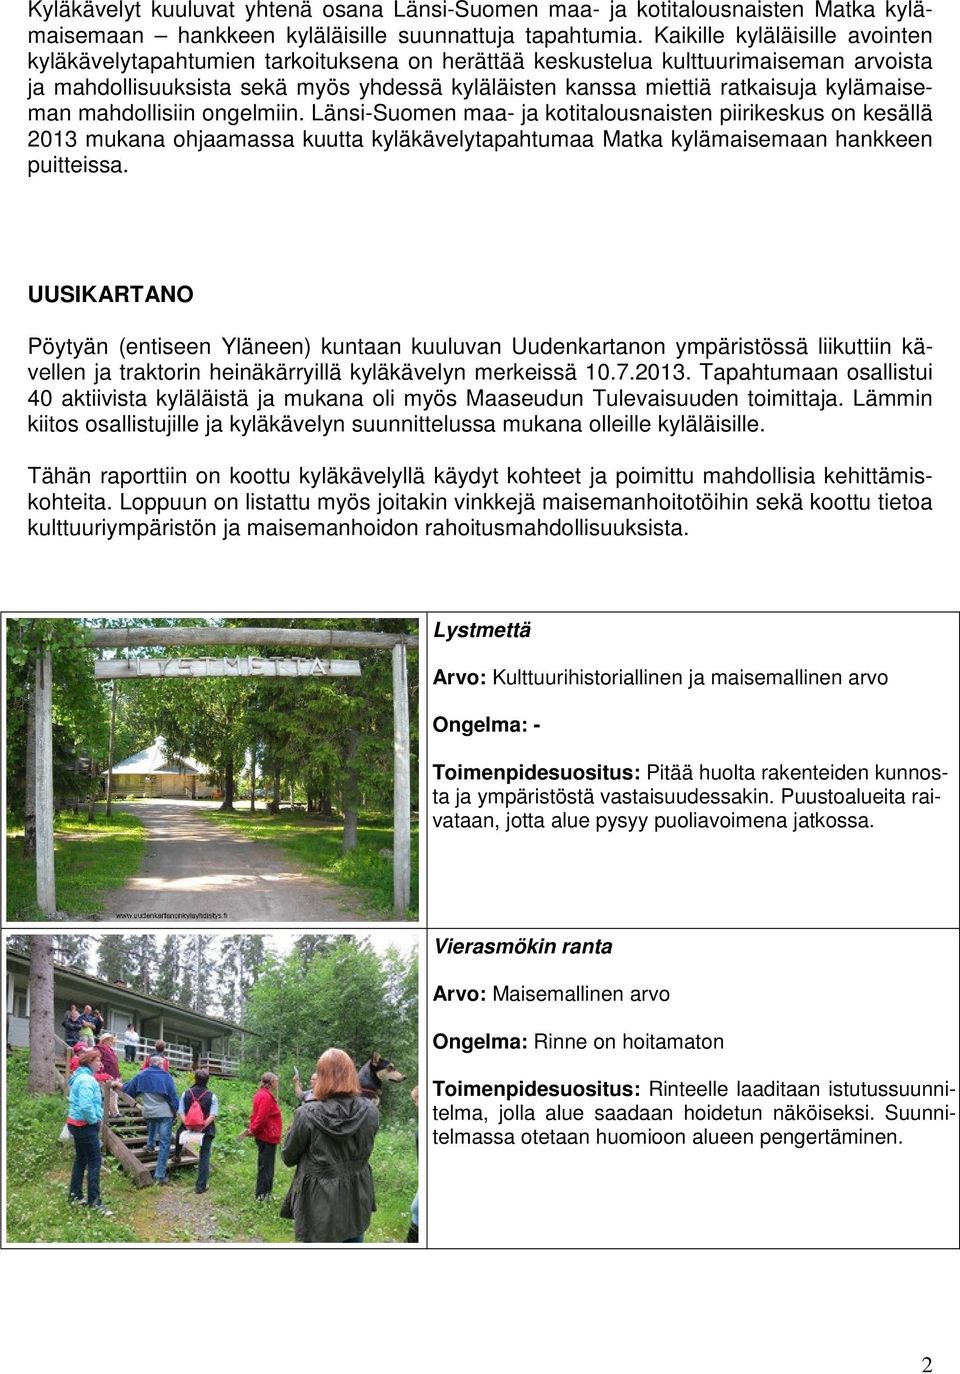 kylämaiseman mahdollisiin ongelmiin. Länsi-Suomen maa- ja kotitalousnaisten piirikeskus on kesällä 2013 mukana ohjaamassa kuutta kyläkävelytapahtumaa Matka kylämaisemaan hankkeen puitteissa.